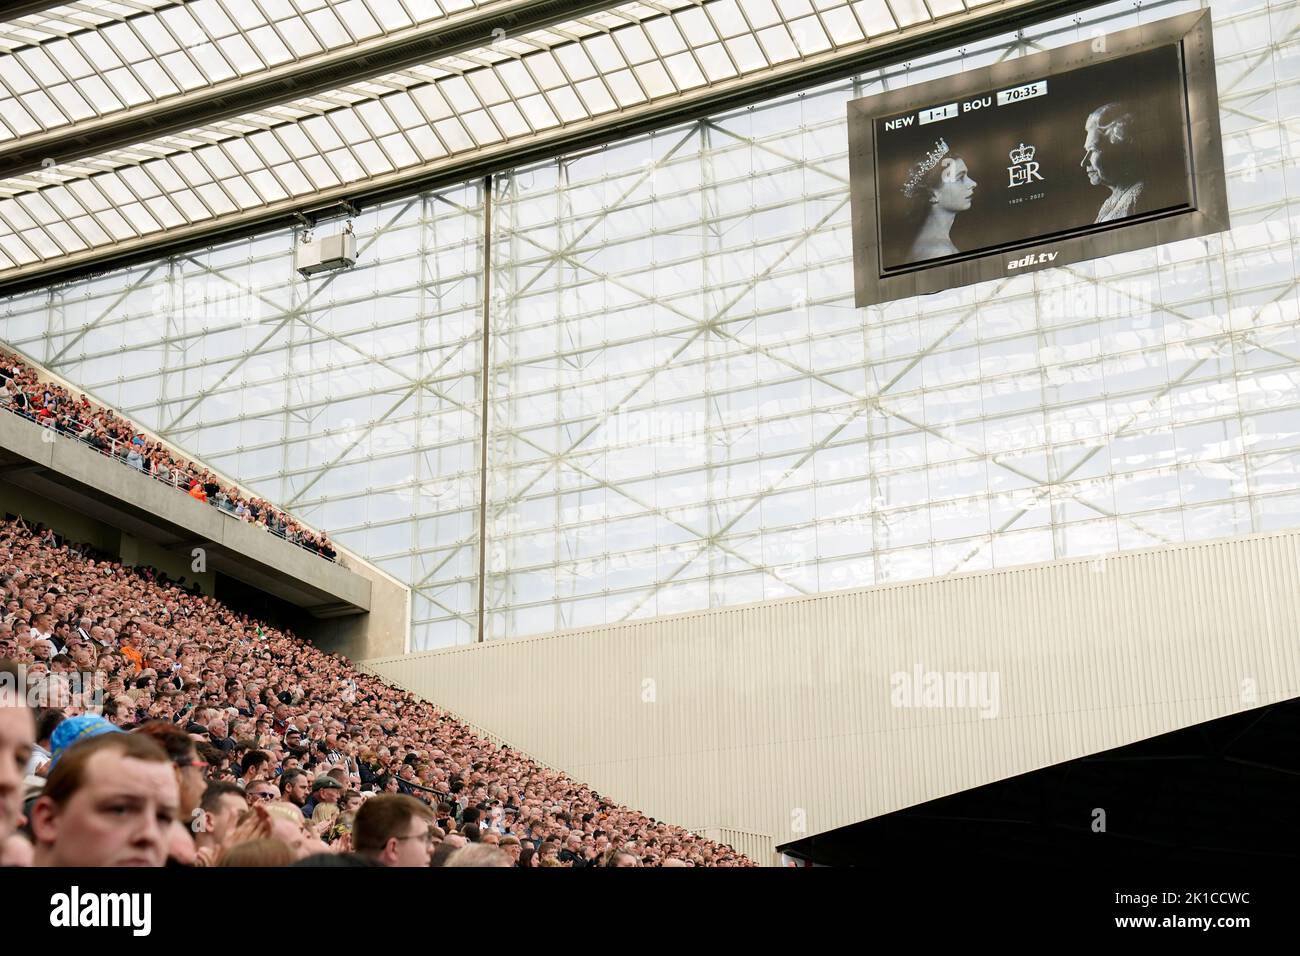 Les fans applaudissent le règne de 70 ans de la Reine sur les 70th minutes de jeu pendant le match de la Premier League à St James' Park, Newcastle. Date de la photo: Samedi 17 septembre 2022. Banque D'Images